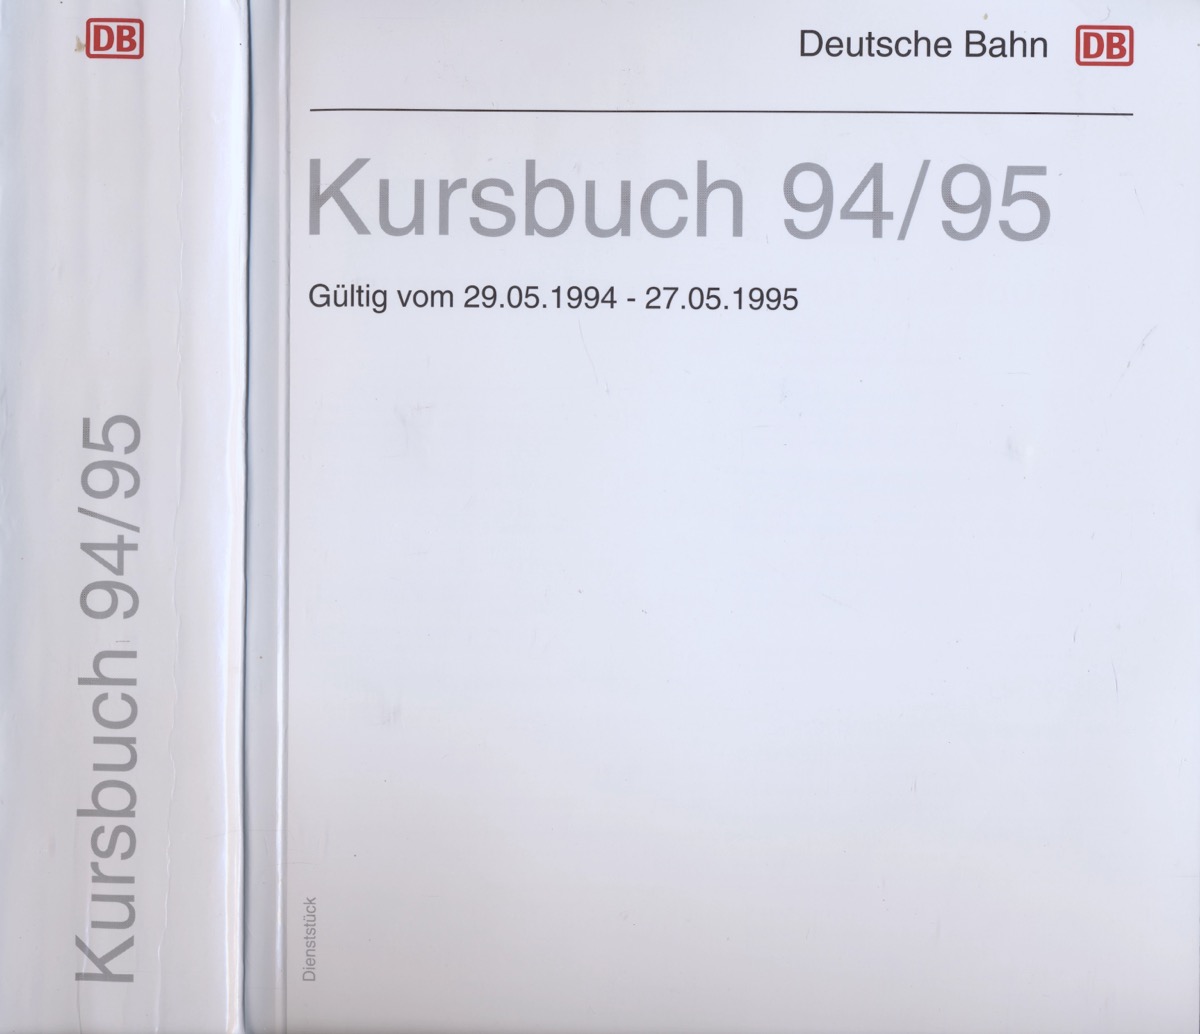 Deutsche Bahn AG  Deutsche Bahn: Kursbuch 1994/95, gültig vom 29.05.1994 bis 27.05.1995. 